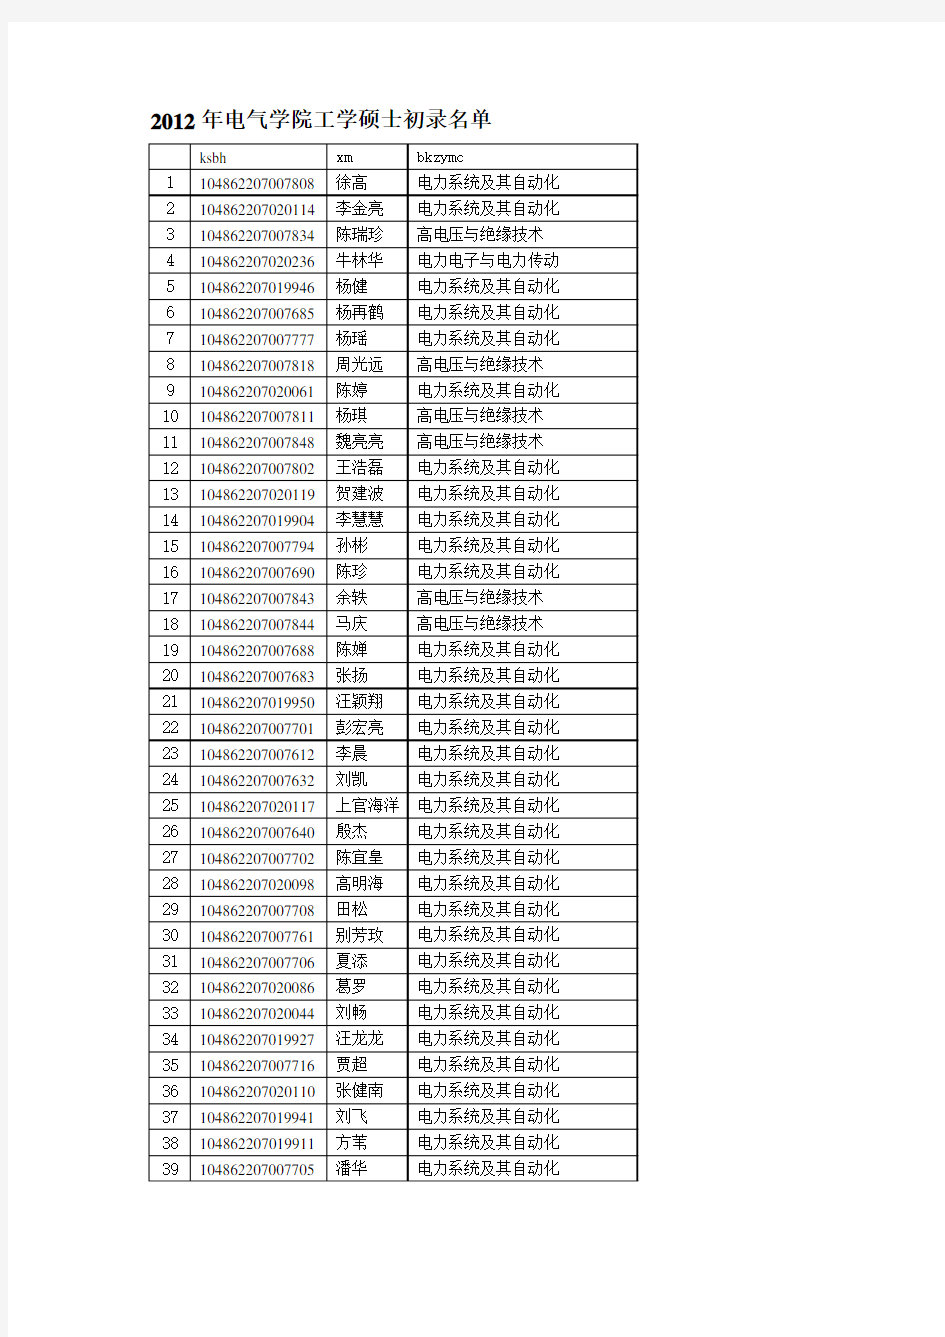 武汉大学电气工程学院2012年硕士研究生复试结果及拟录取名单